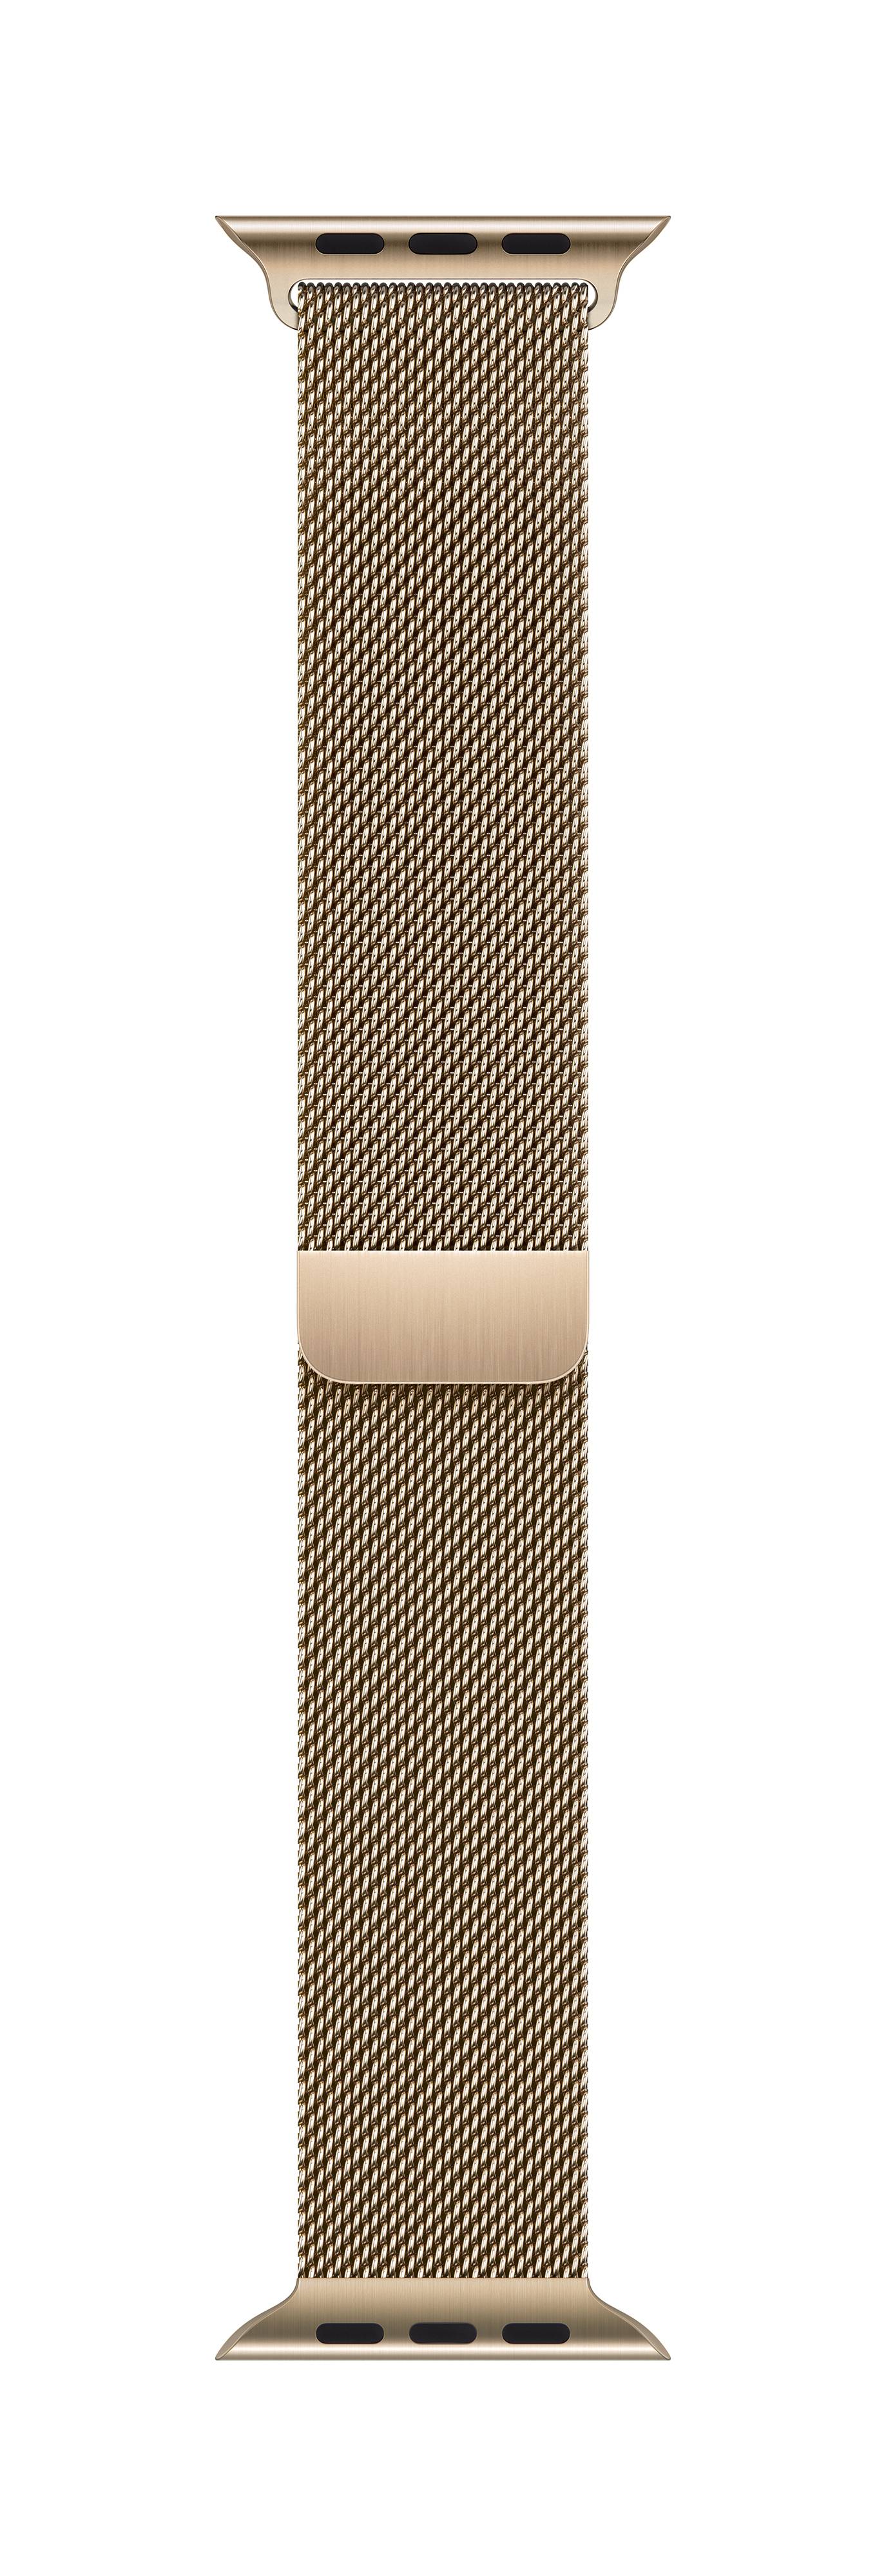 APPLE Milanaise Armband für Watch 41mm (gold)